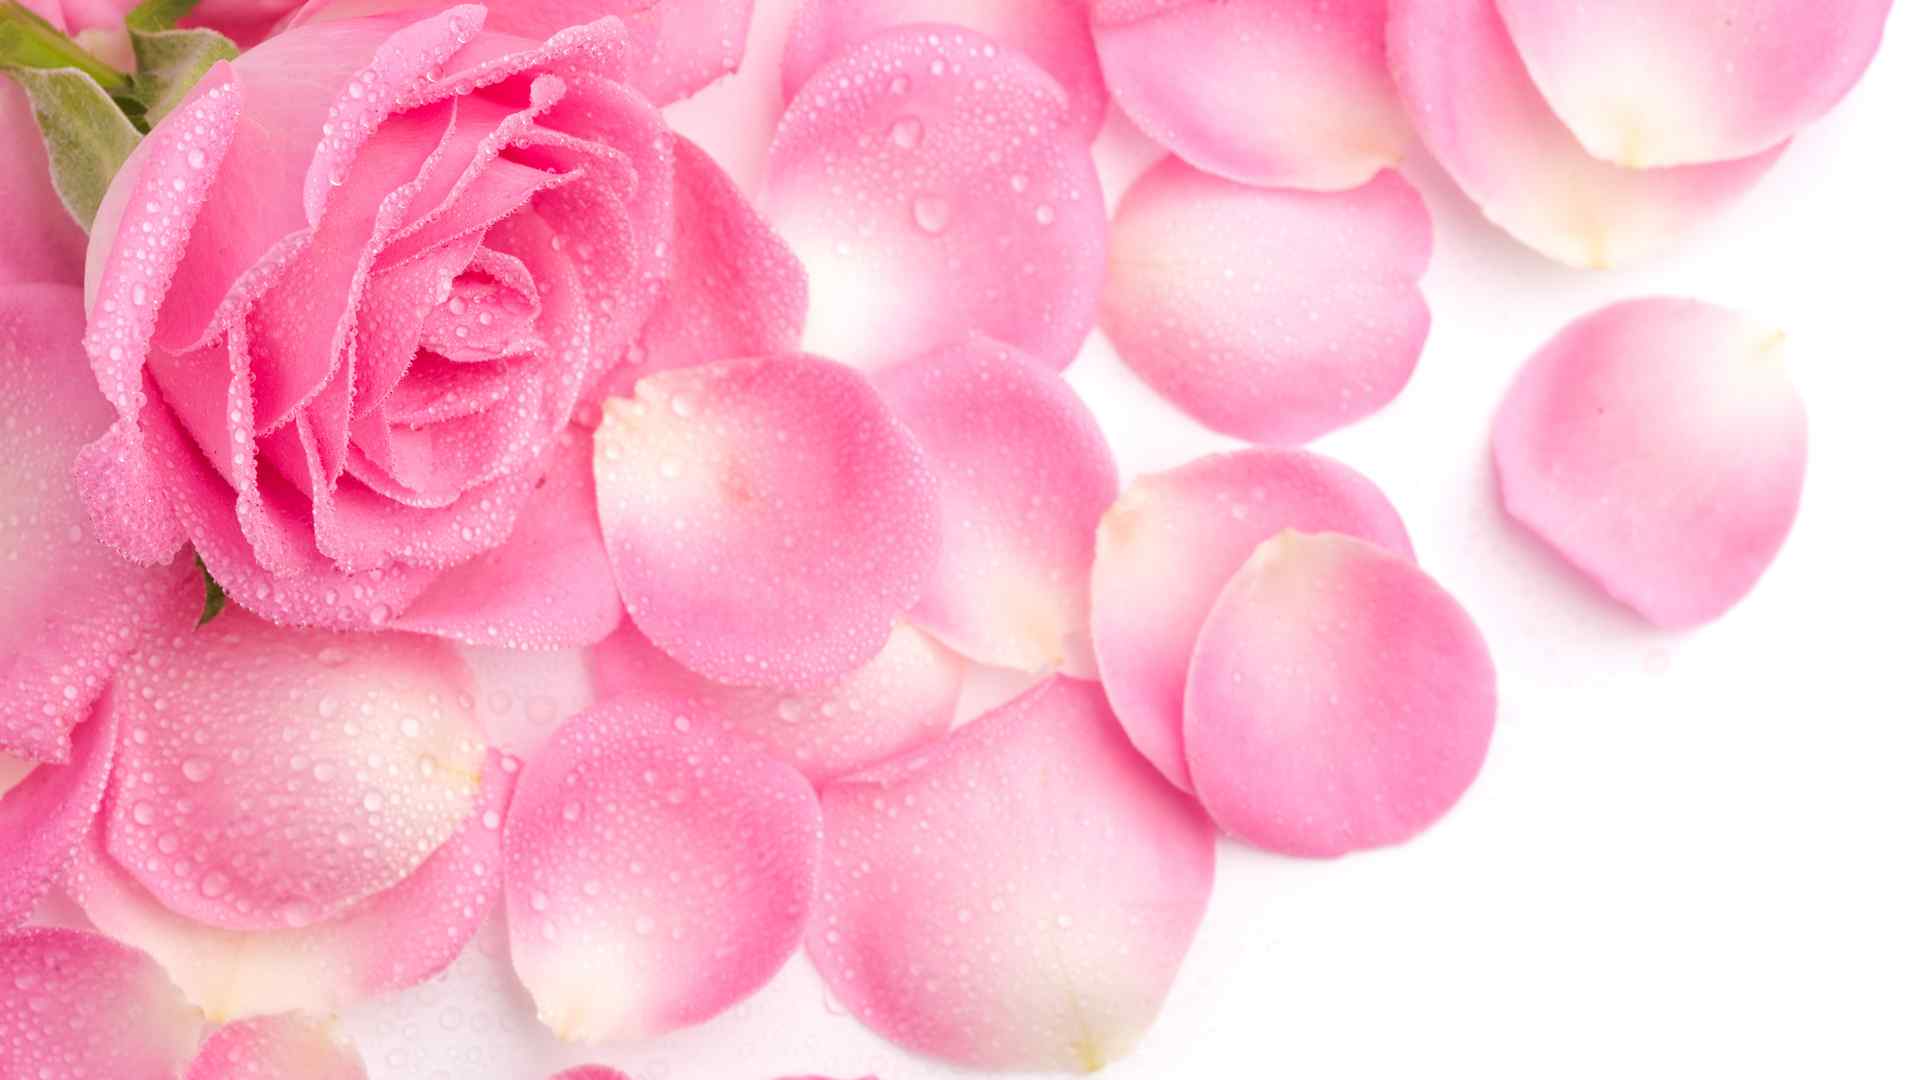 清新唯美的粉色玫瑰花瓣图片高清电脑桌面壁纸